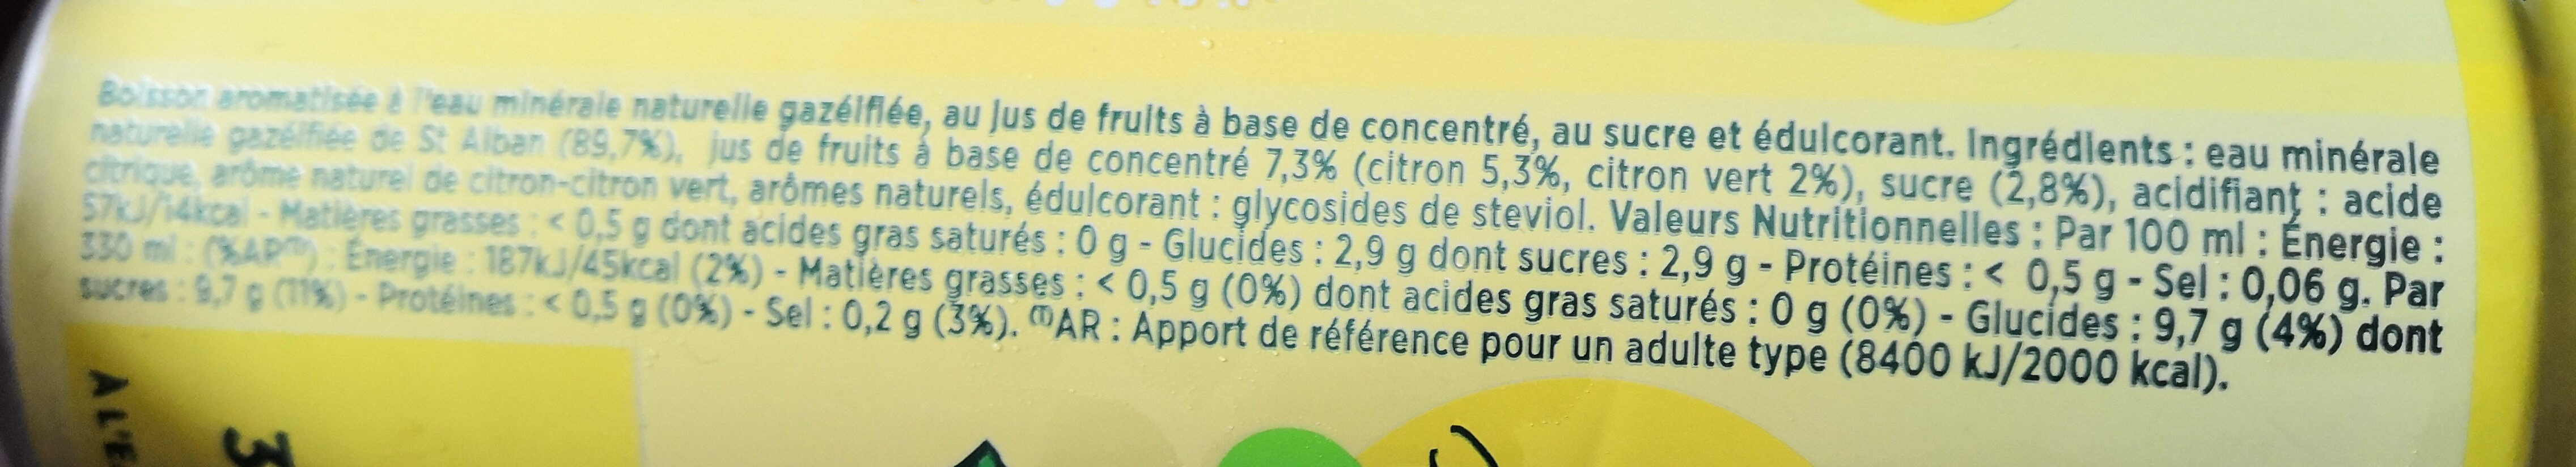 Bulles de fruit citron touche de citron vert - Ingrédients